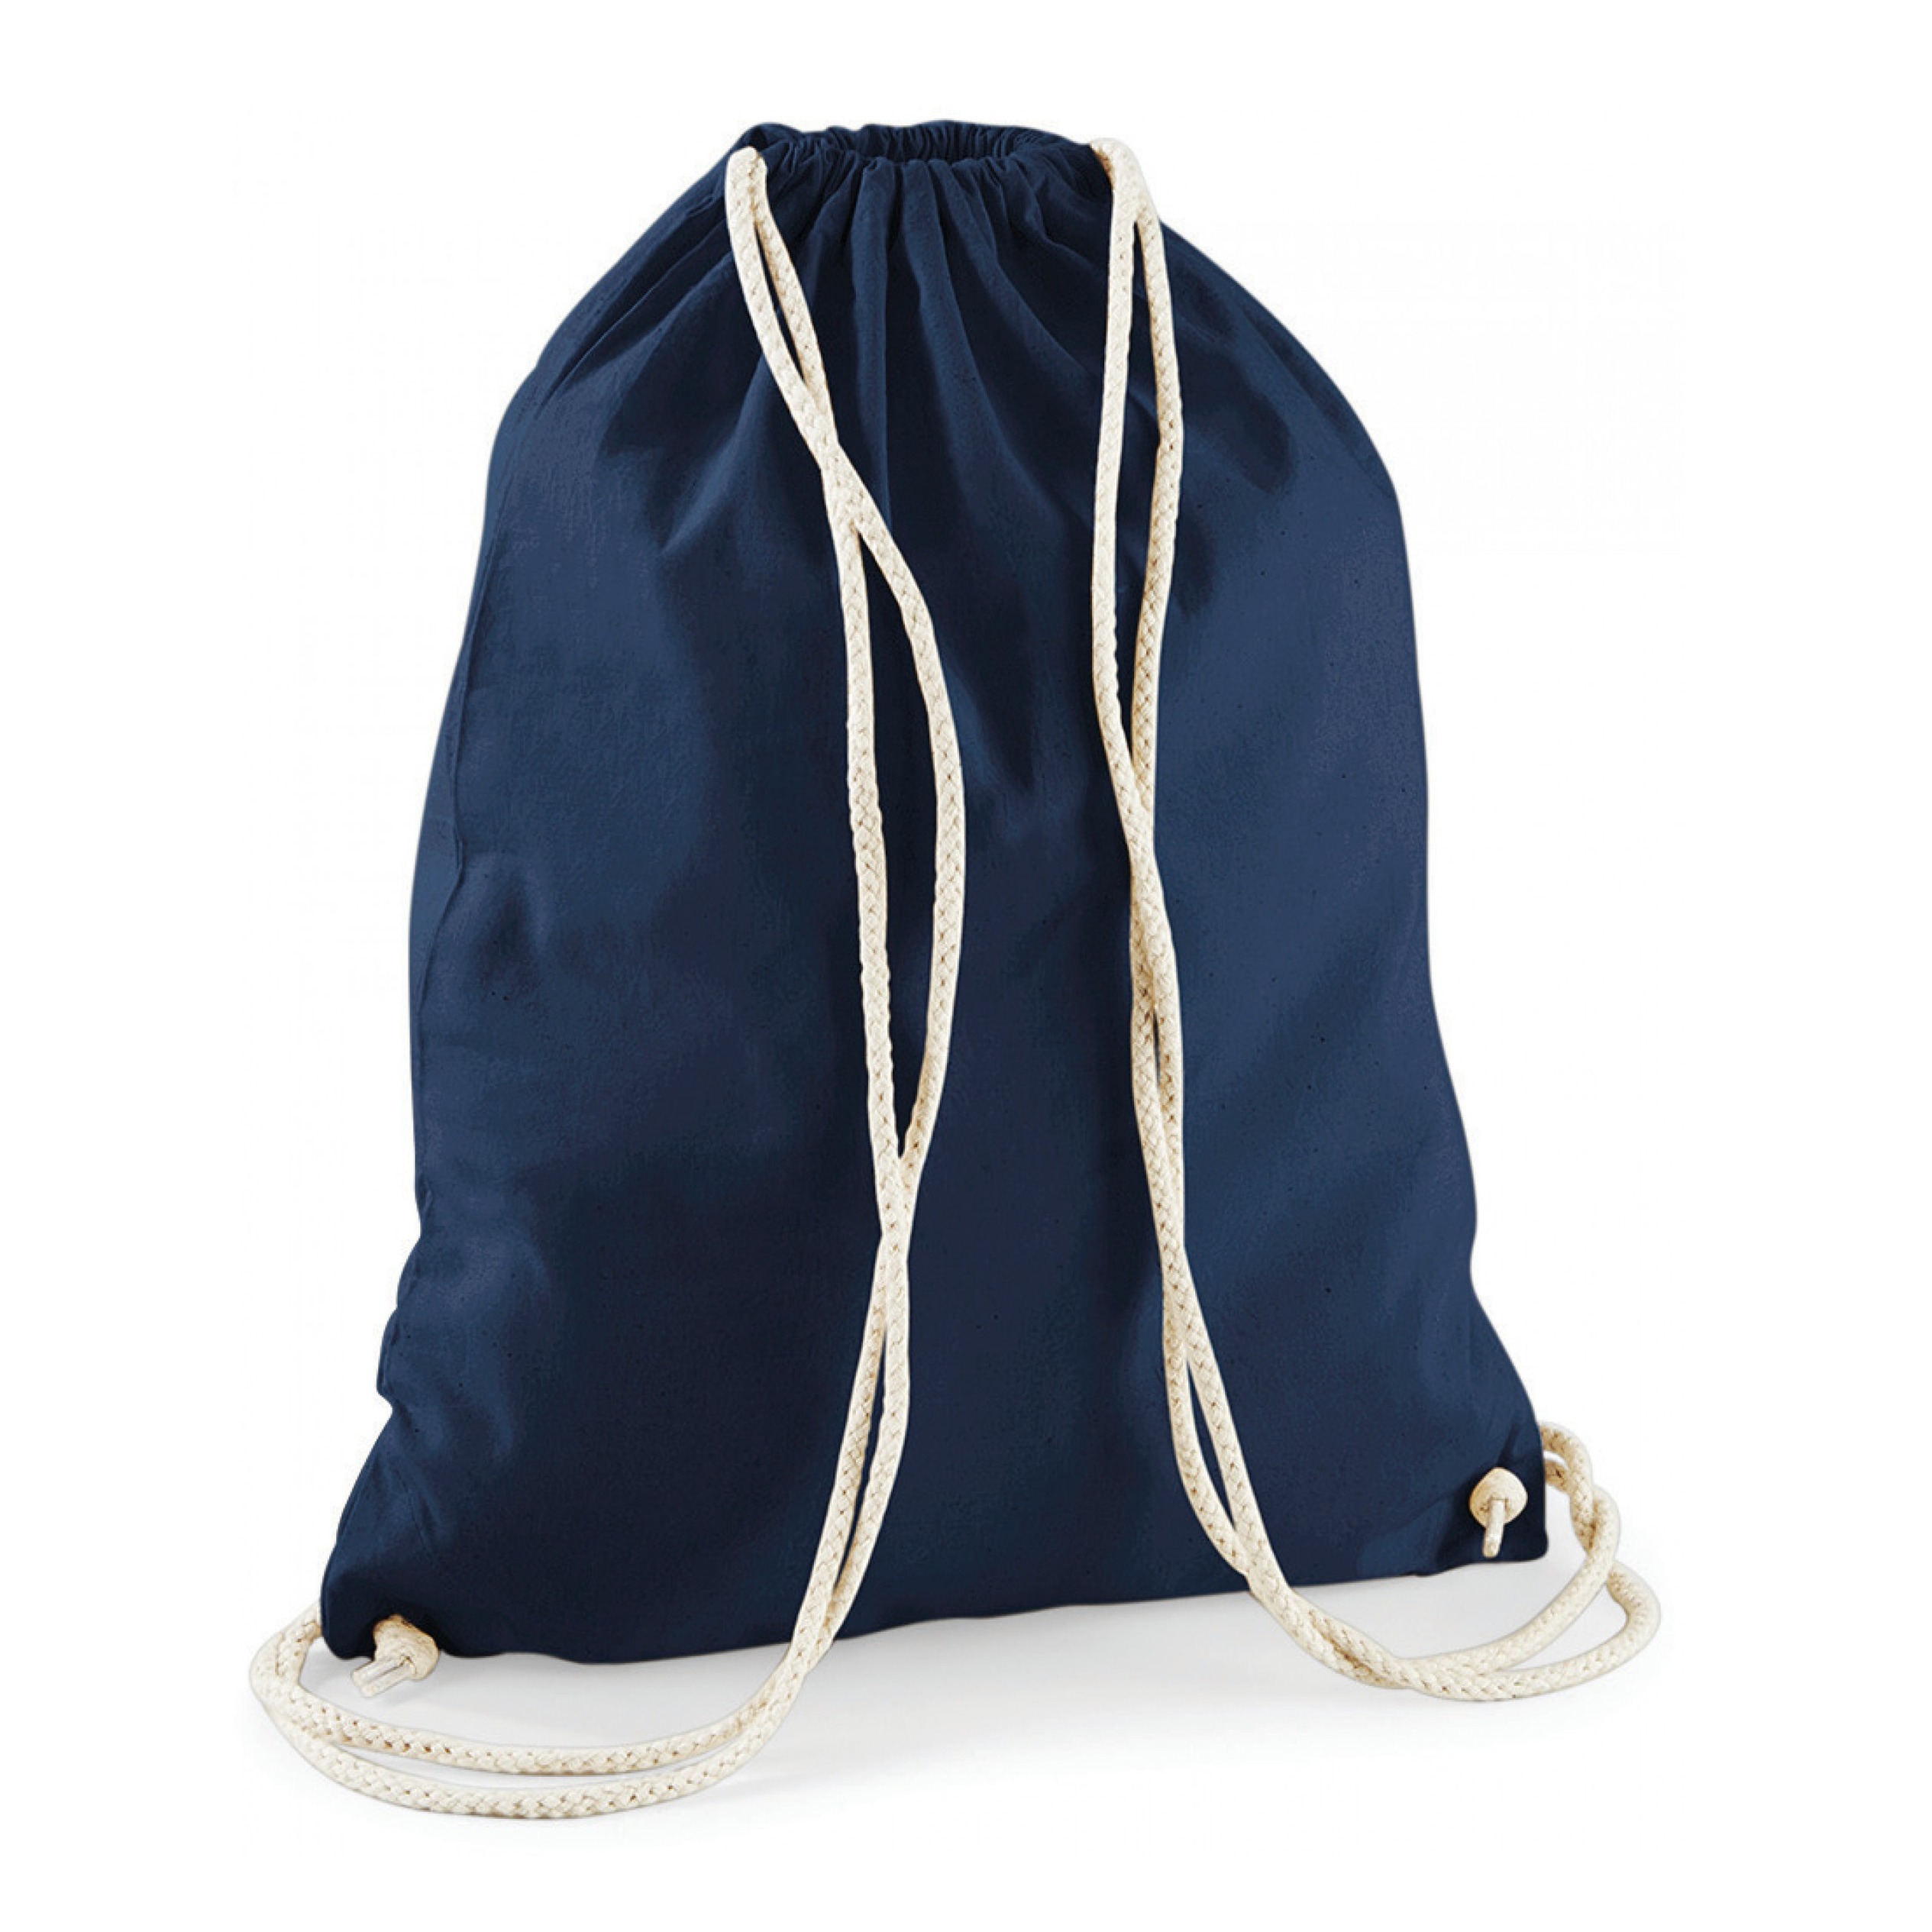 10x stuks sport gymtas donkerblauw met rijgkoord 46 x 37 cm van katoen -